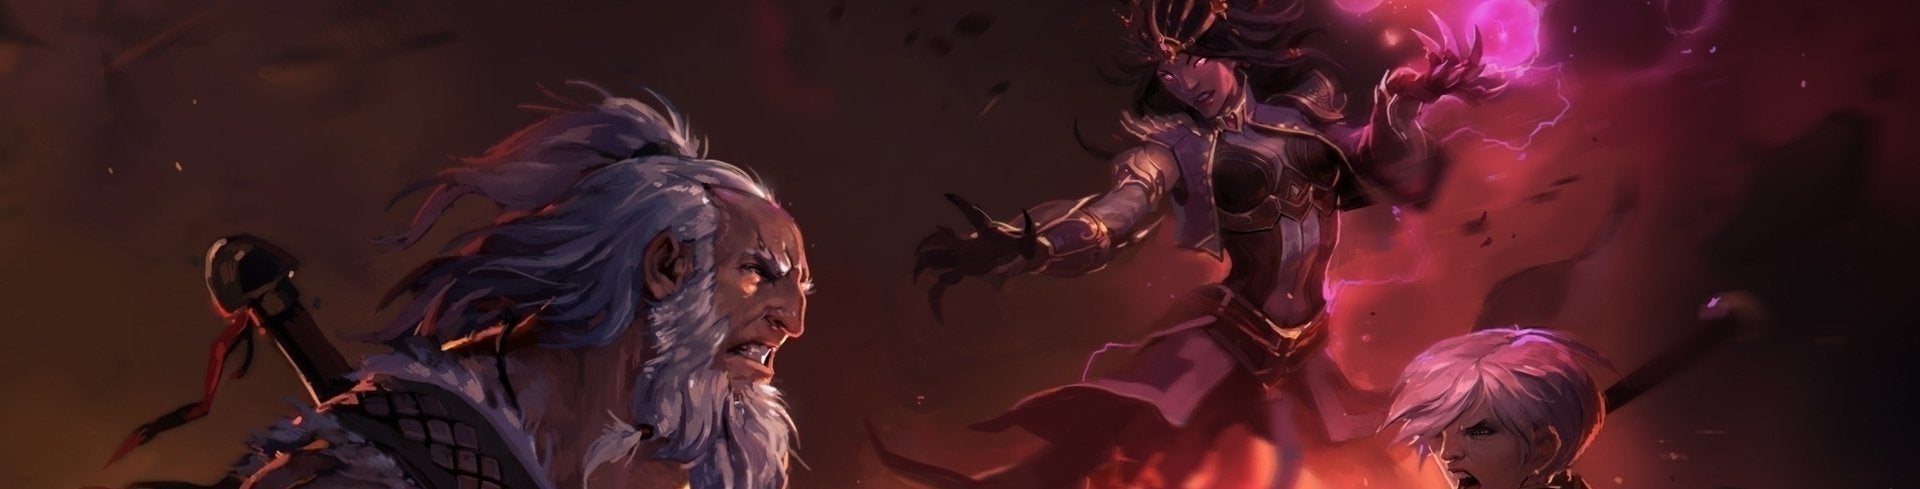 Immagine di Diablo III: Reaper of Souls - Ultimate Evil Edition, a tu per tu con la morte - prova